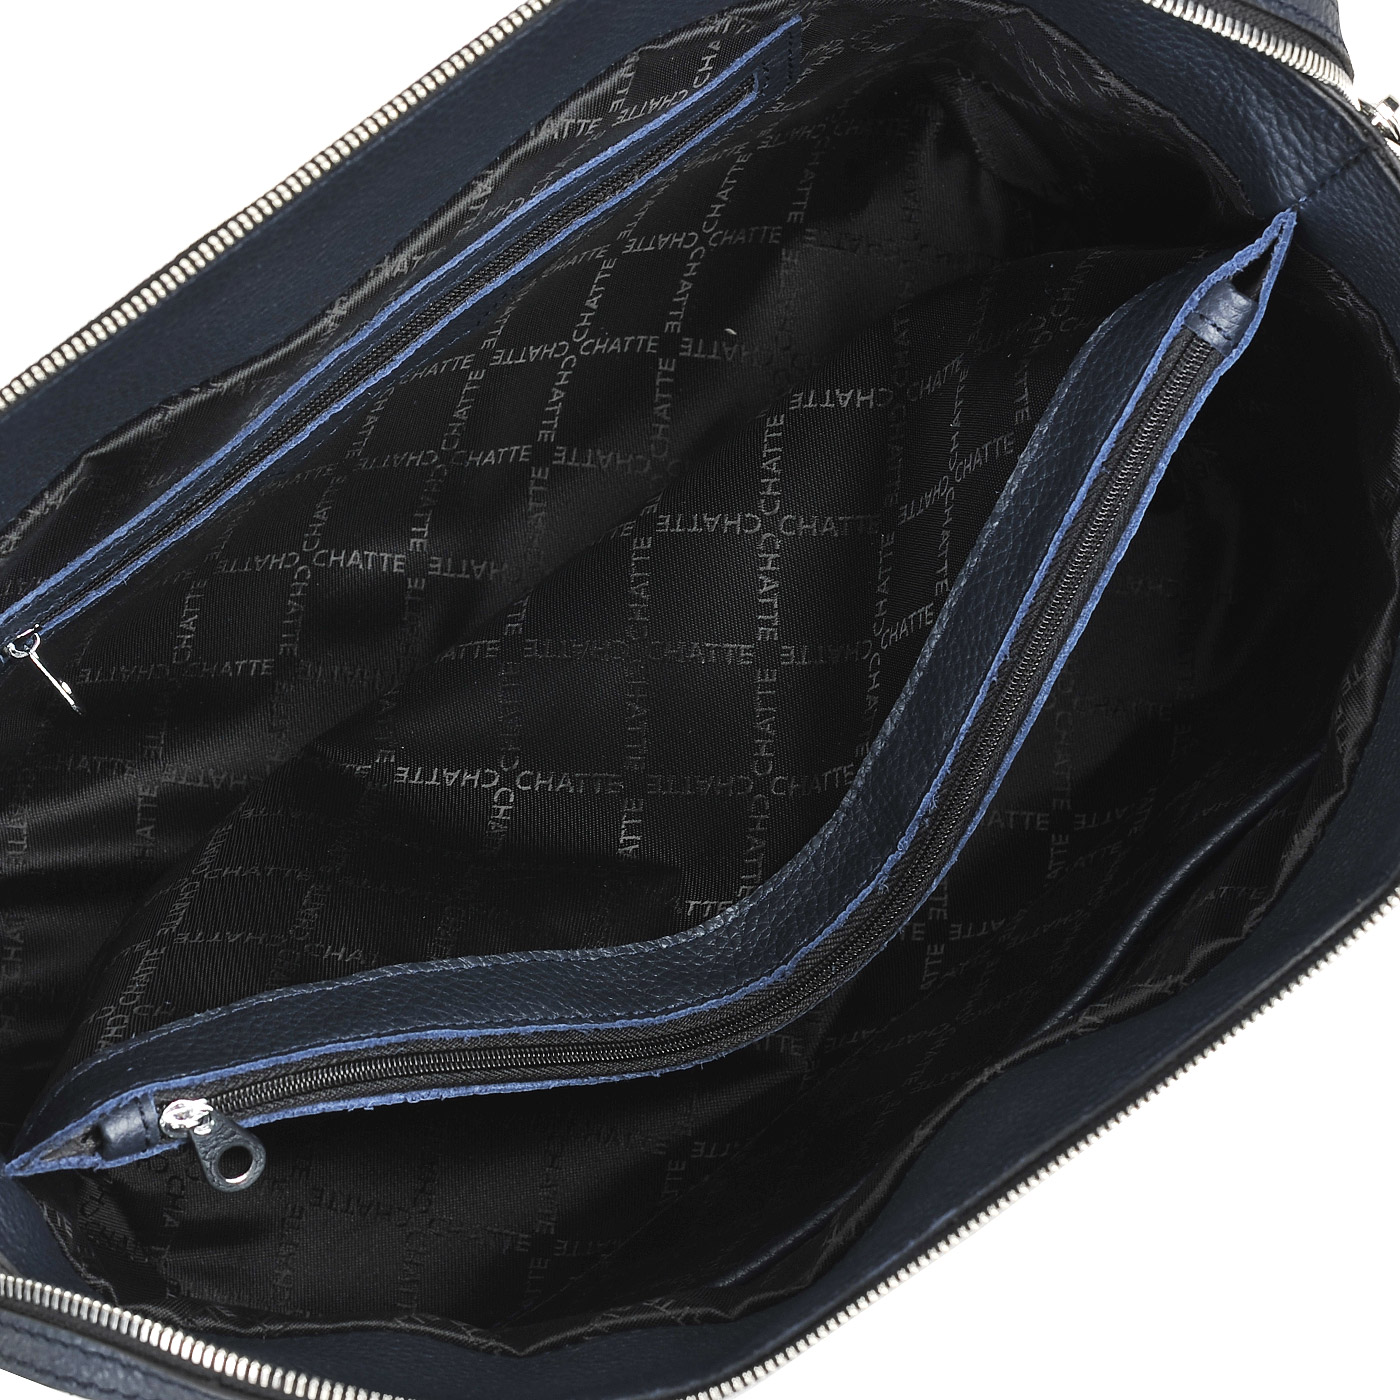 Вместительная кожаная сумка темно-синего цвета Chatte 